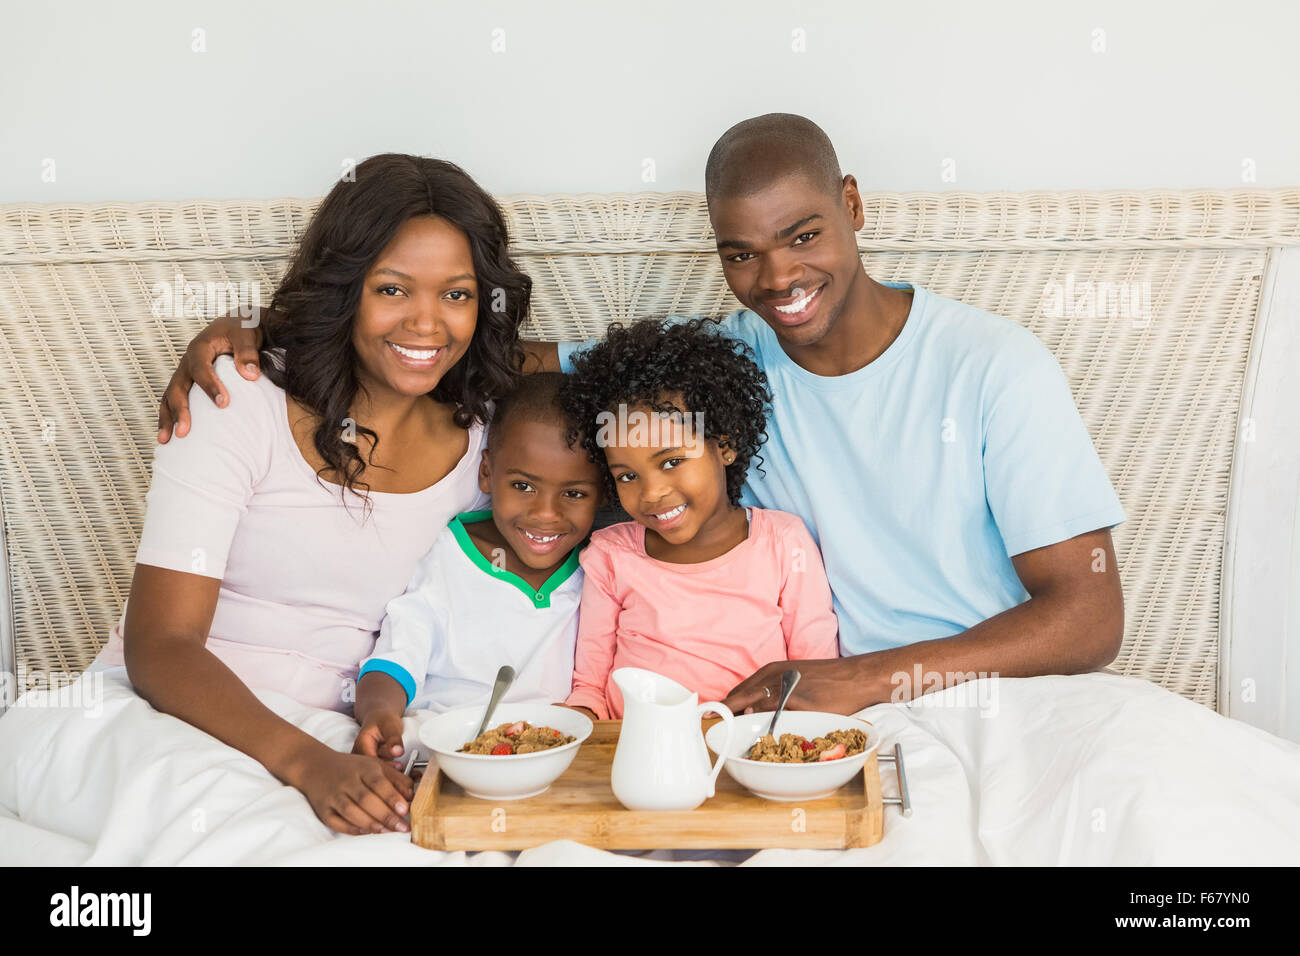 Glückliche Familie zusammen im Bett frühstücken Stockfoto